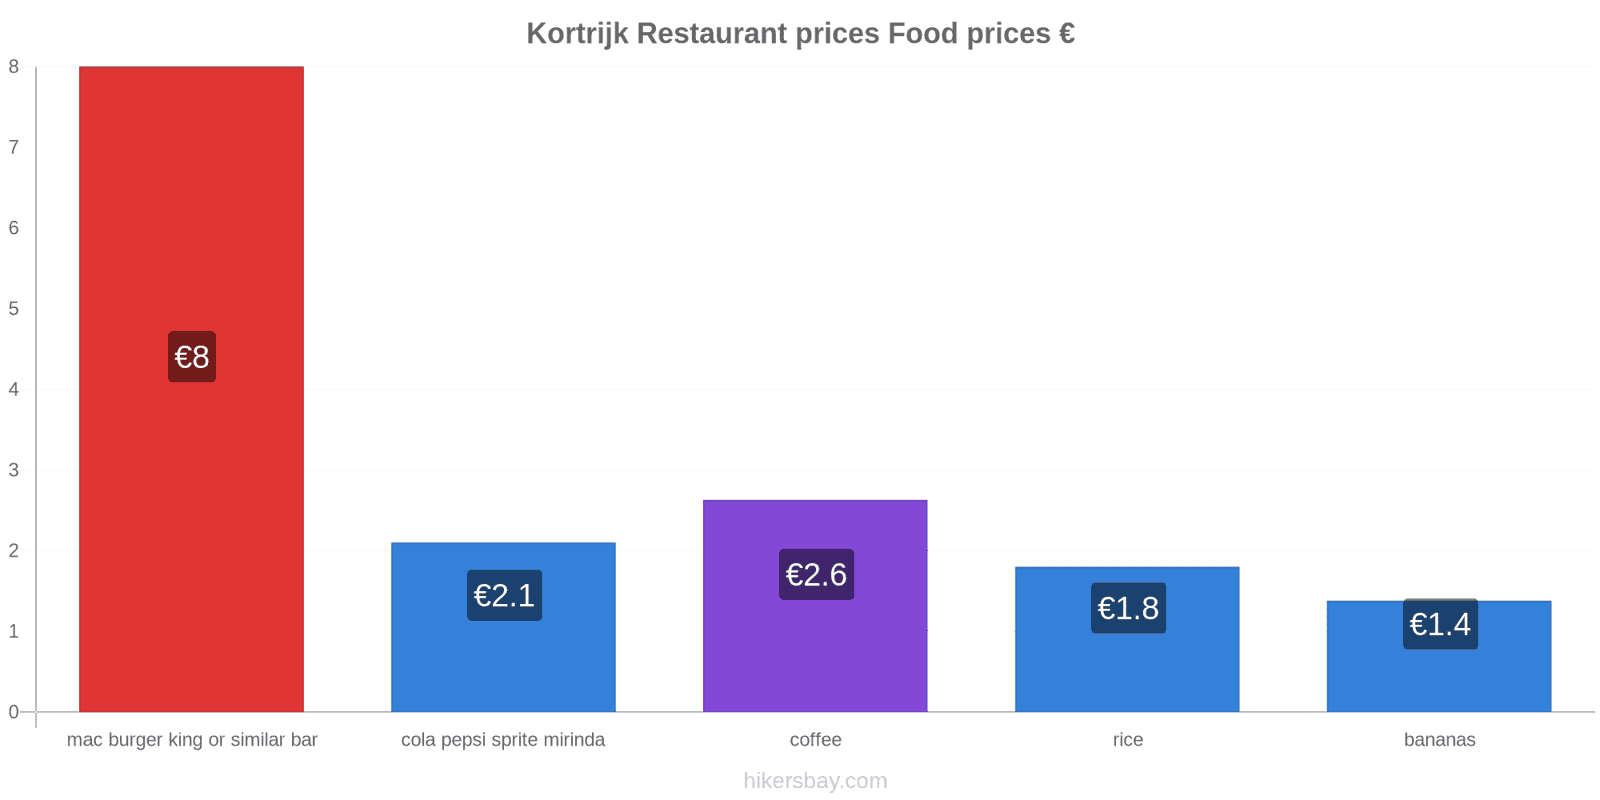 Kortrijk price changes hikersbay.com